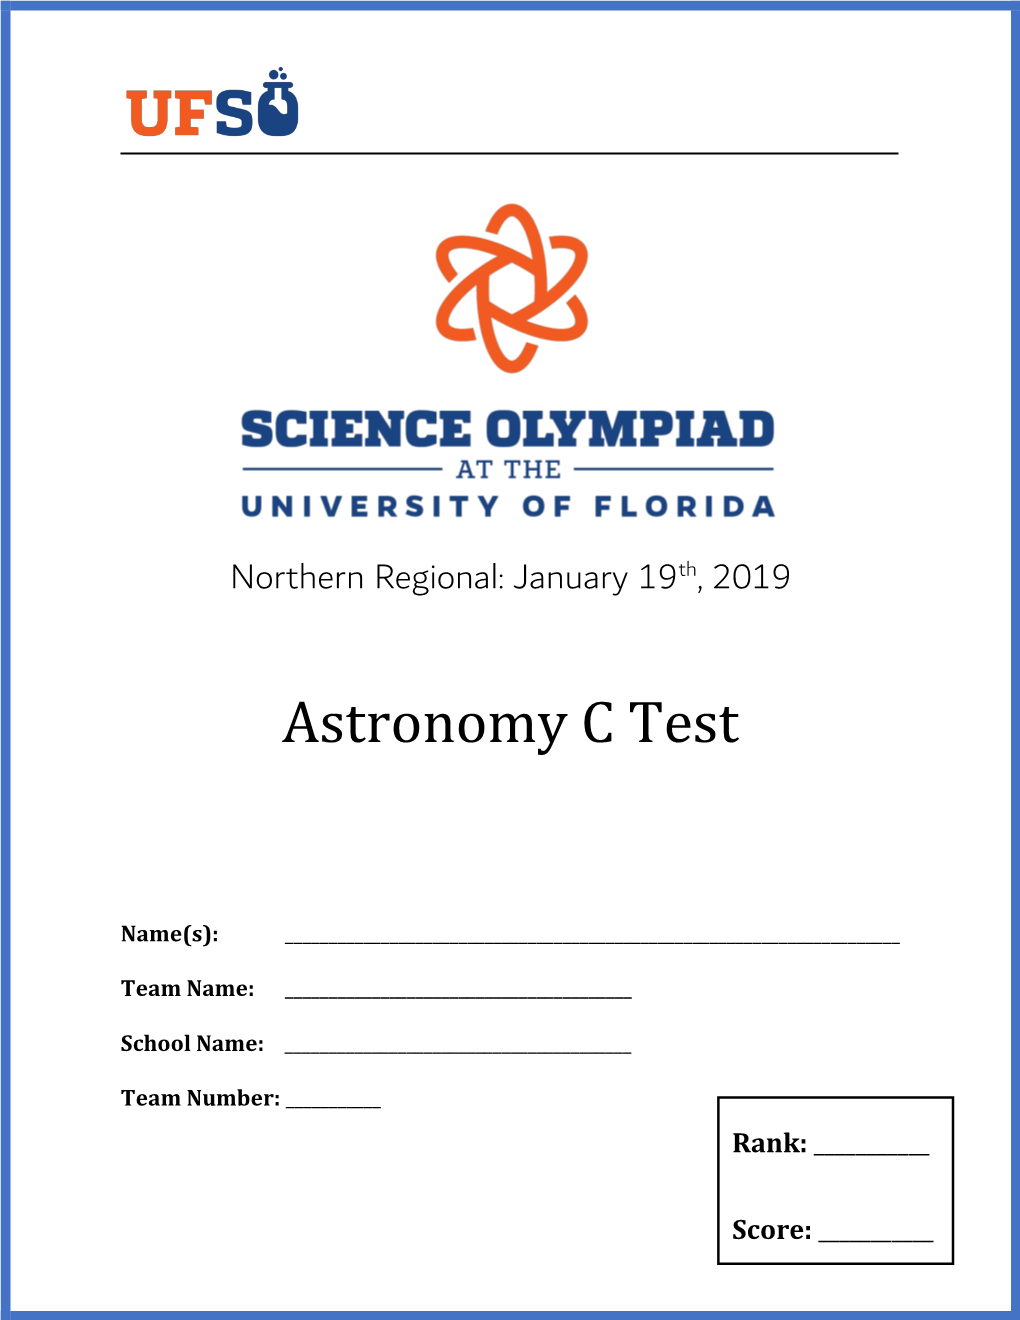 Astronomy C Test